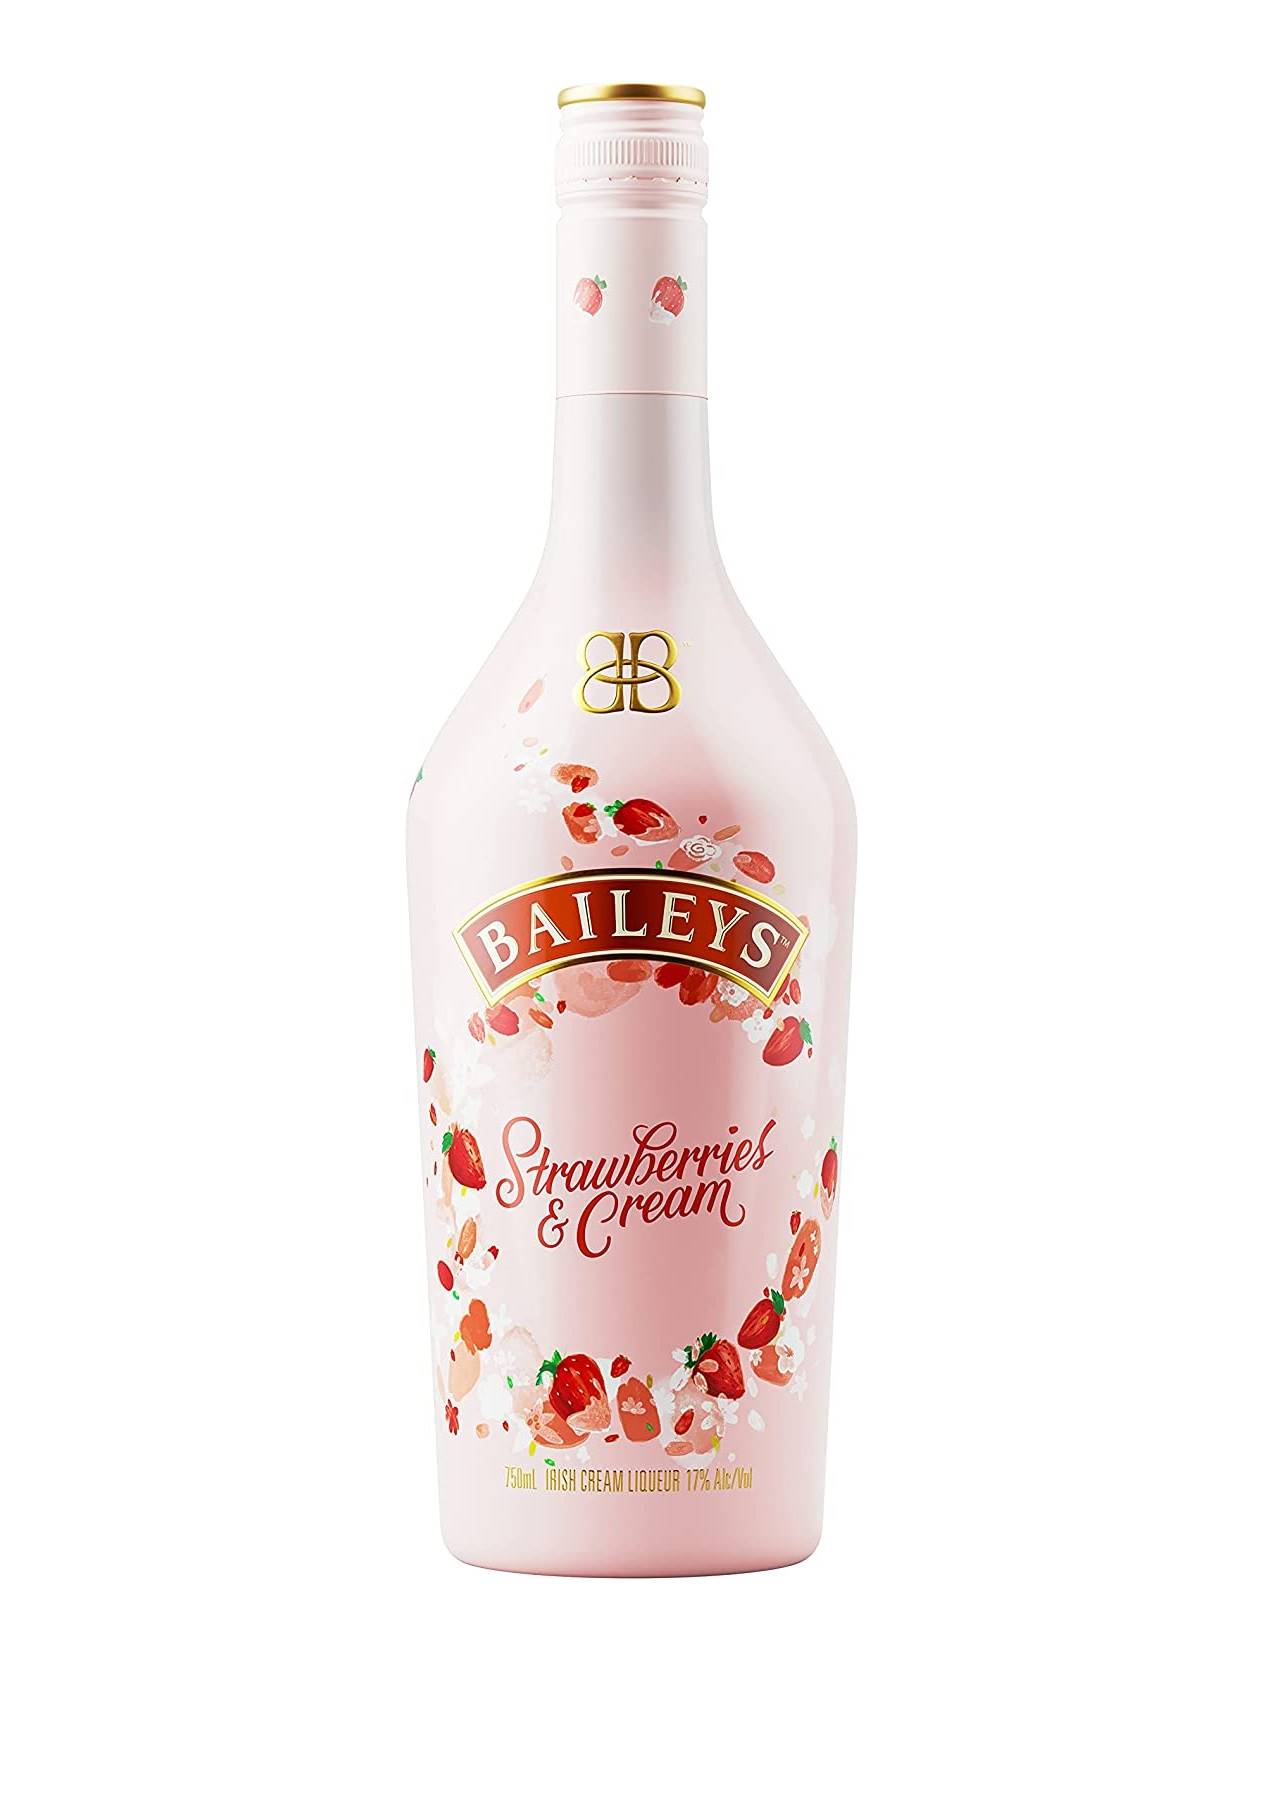 Regalos gourmet baileys strawberries cream Amazon, 16,99€